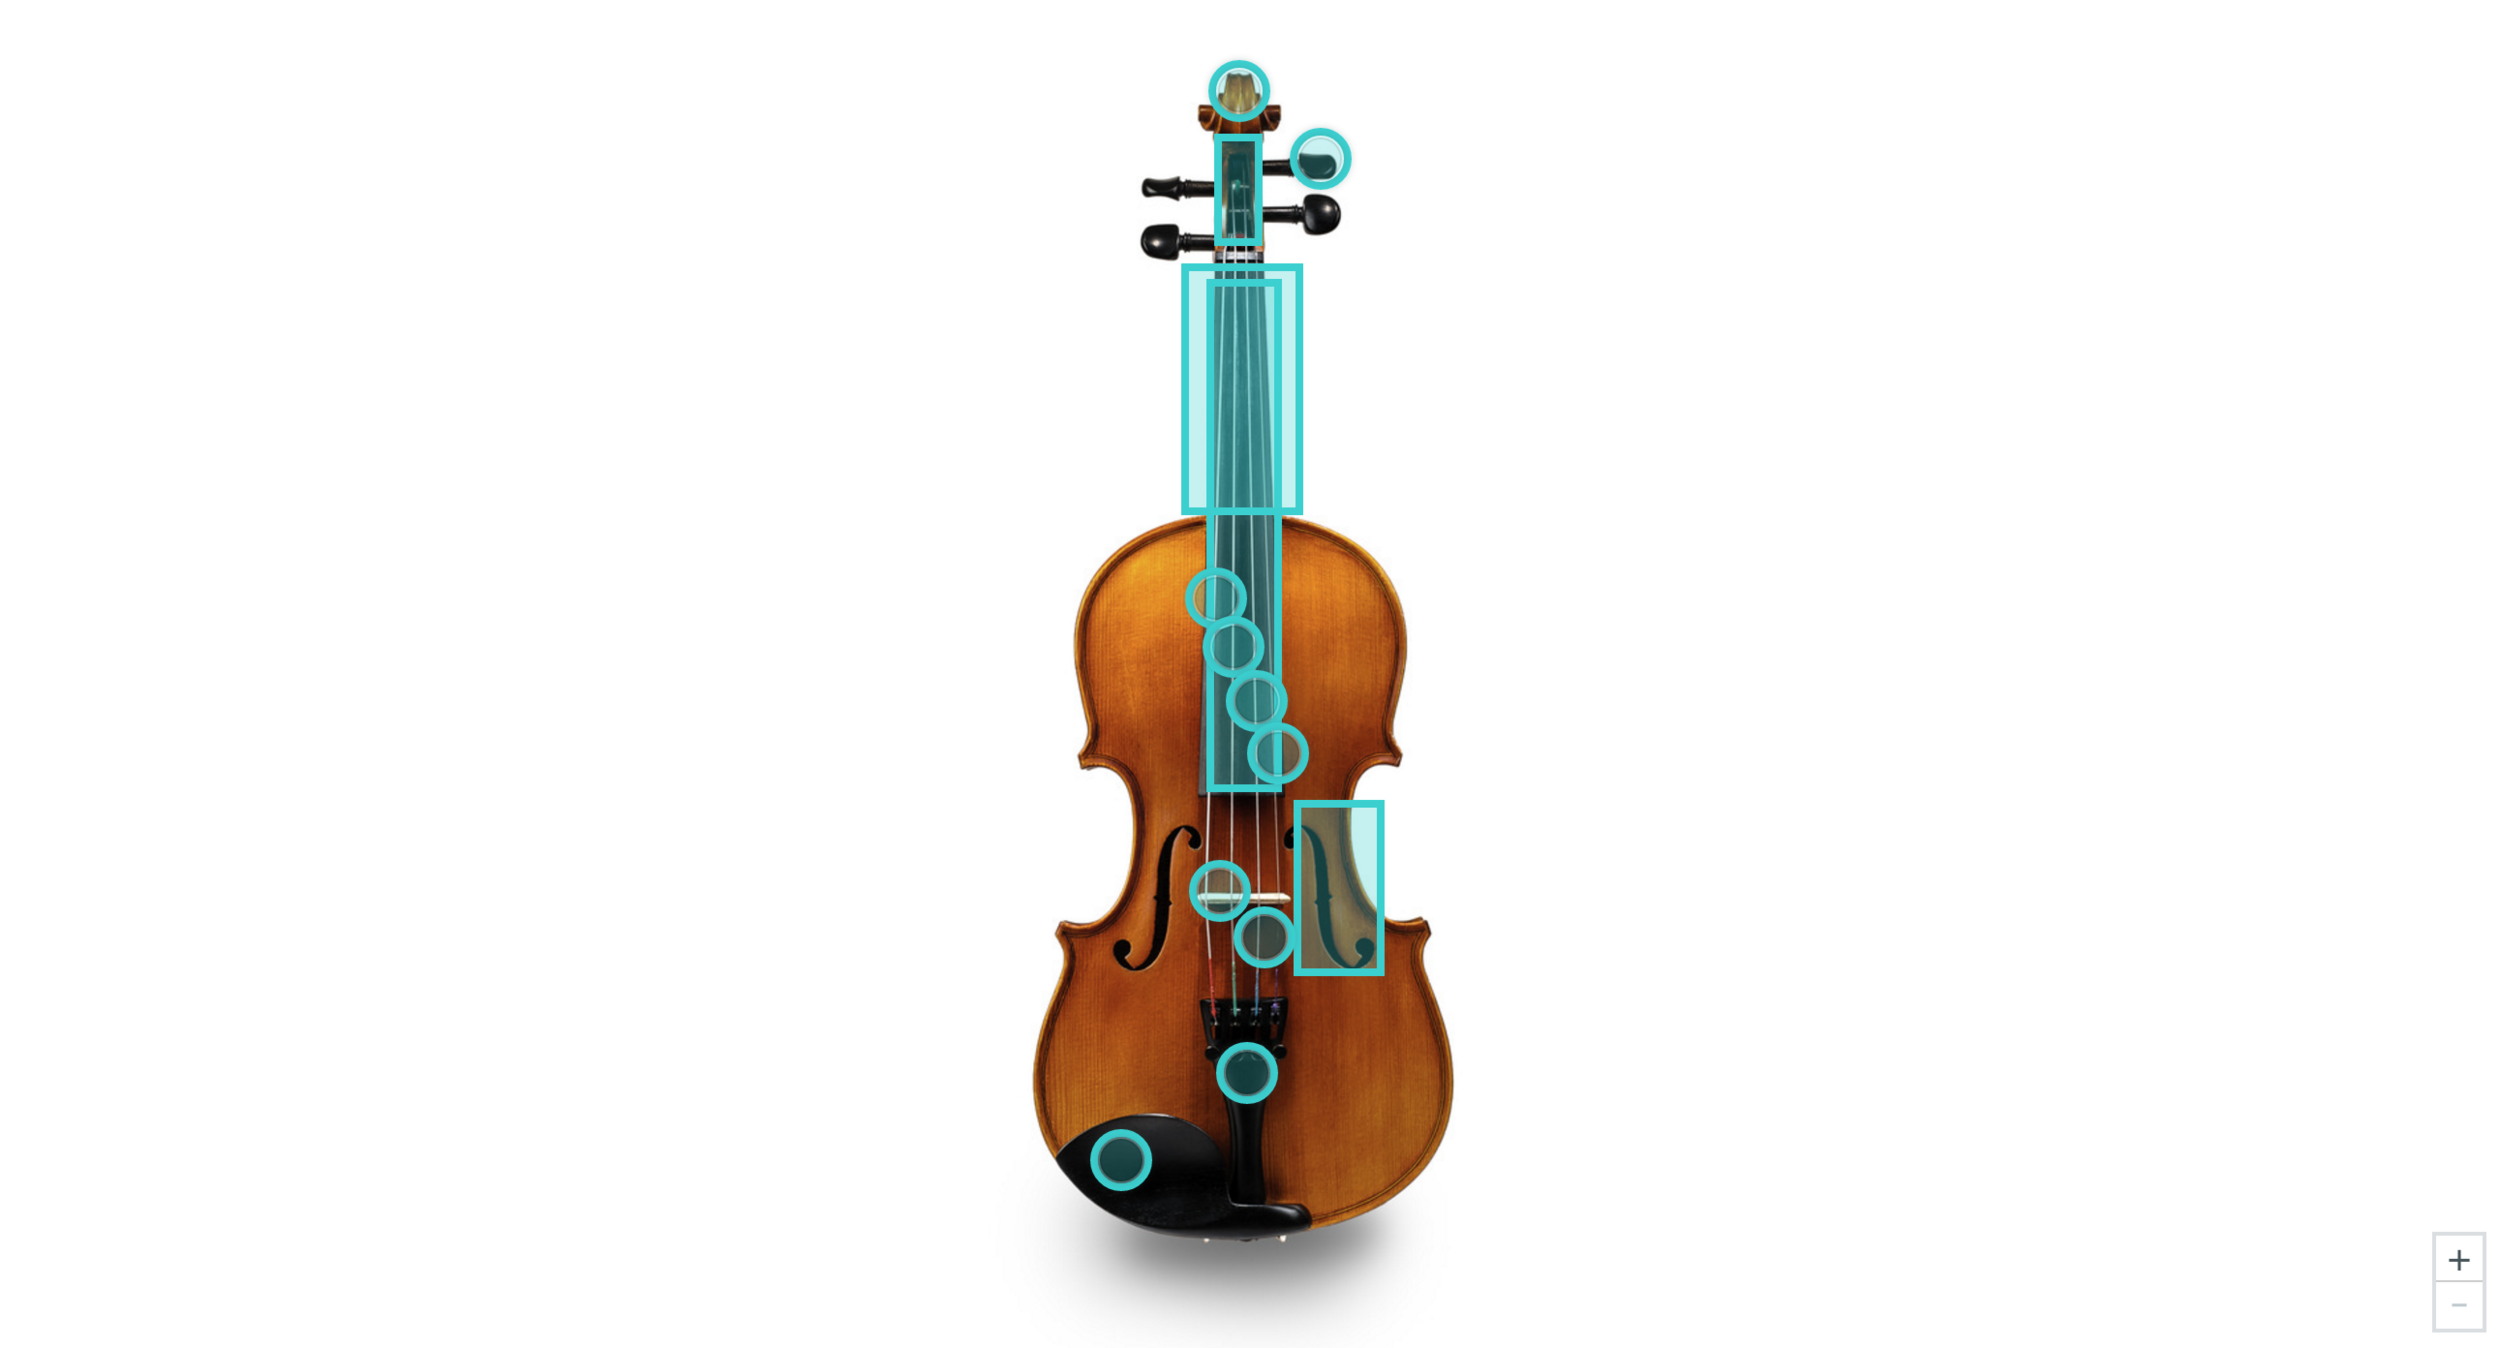 Parts of a Violin